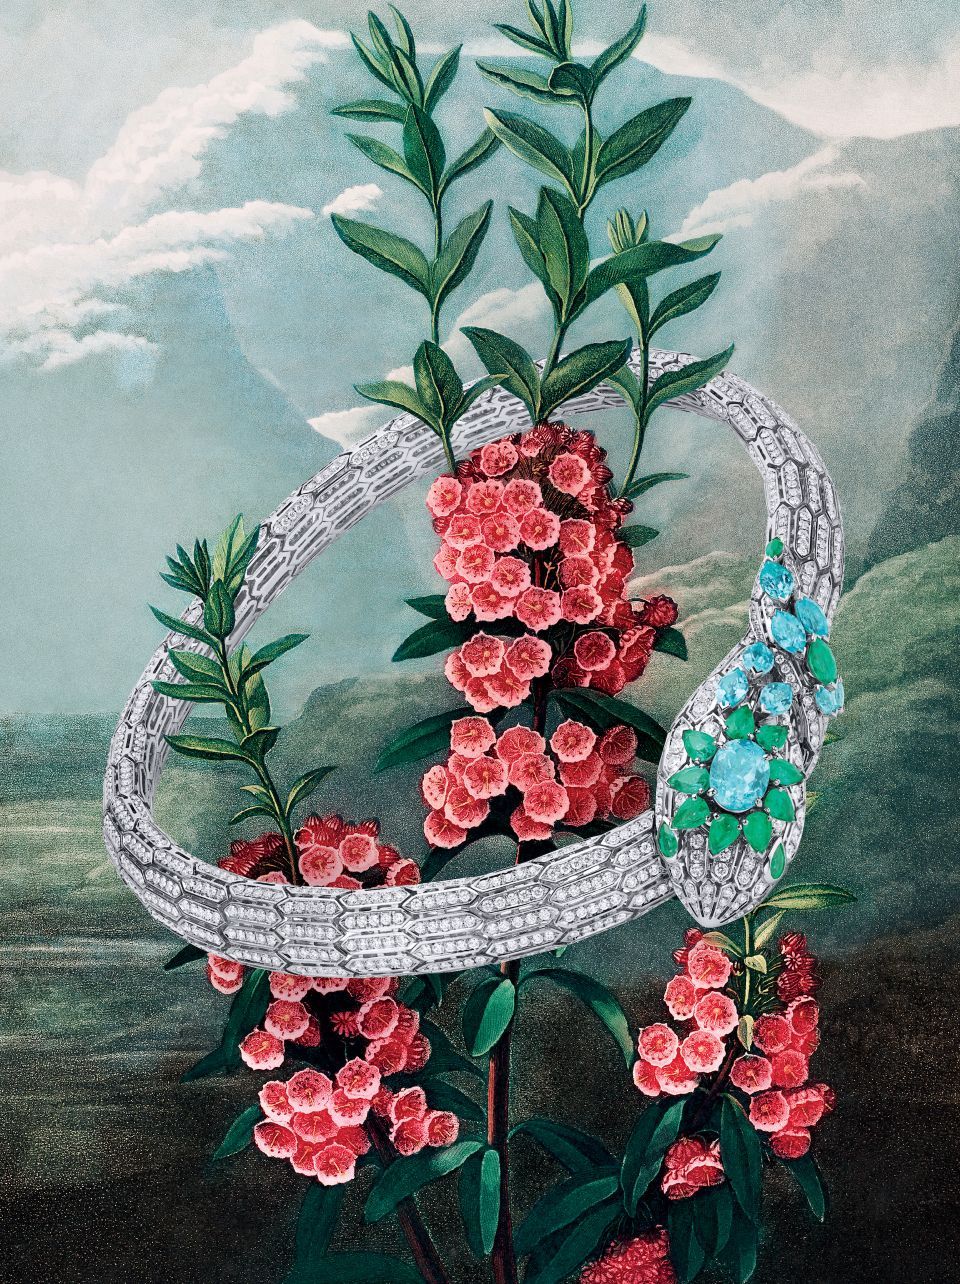 Bulgari's Eden The Garden of Wonders High Jewelry Watch Collection